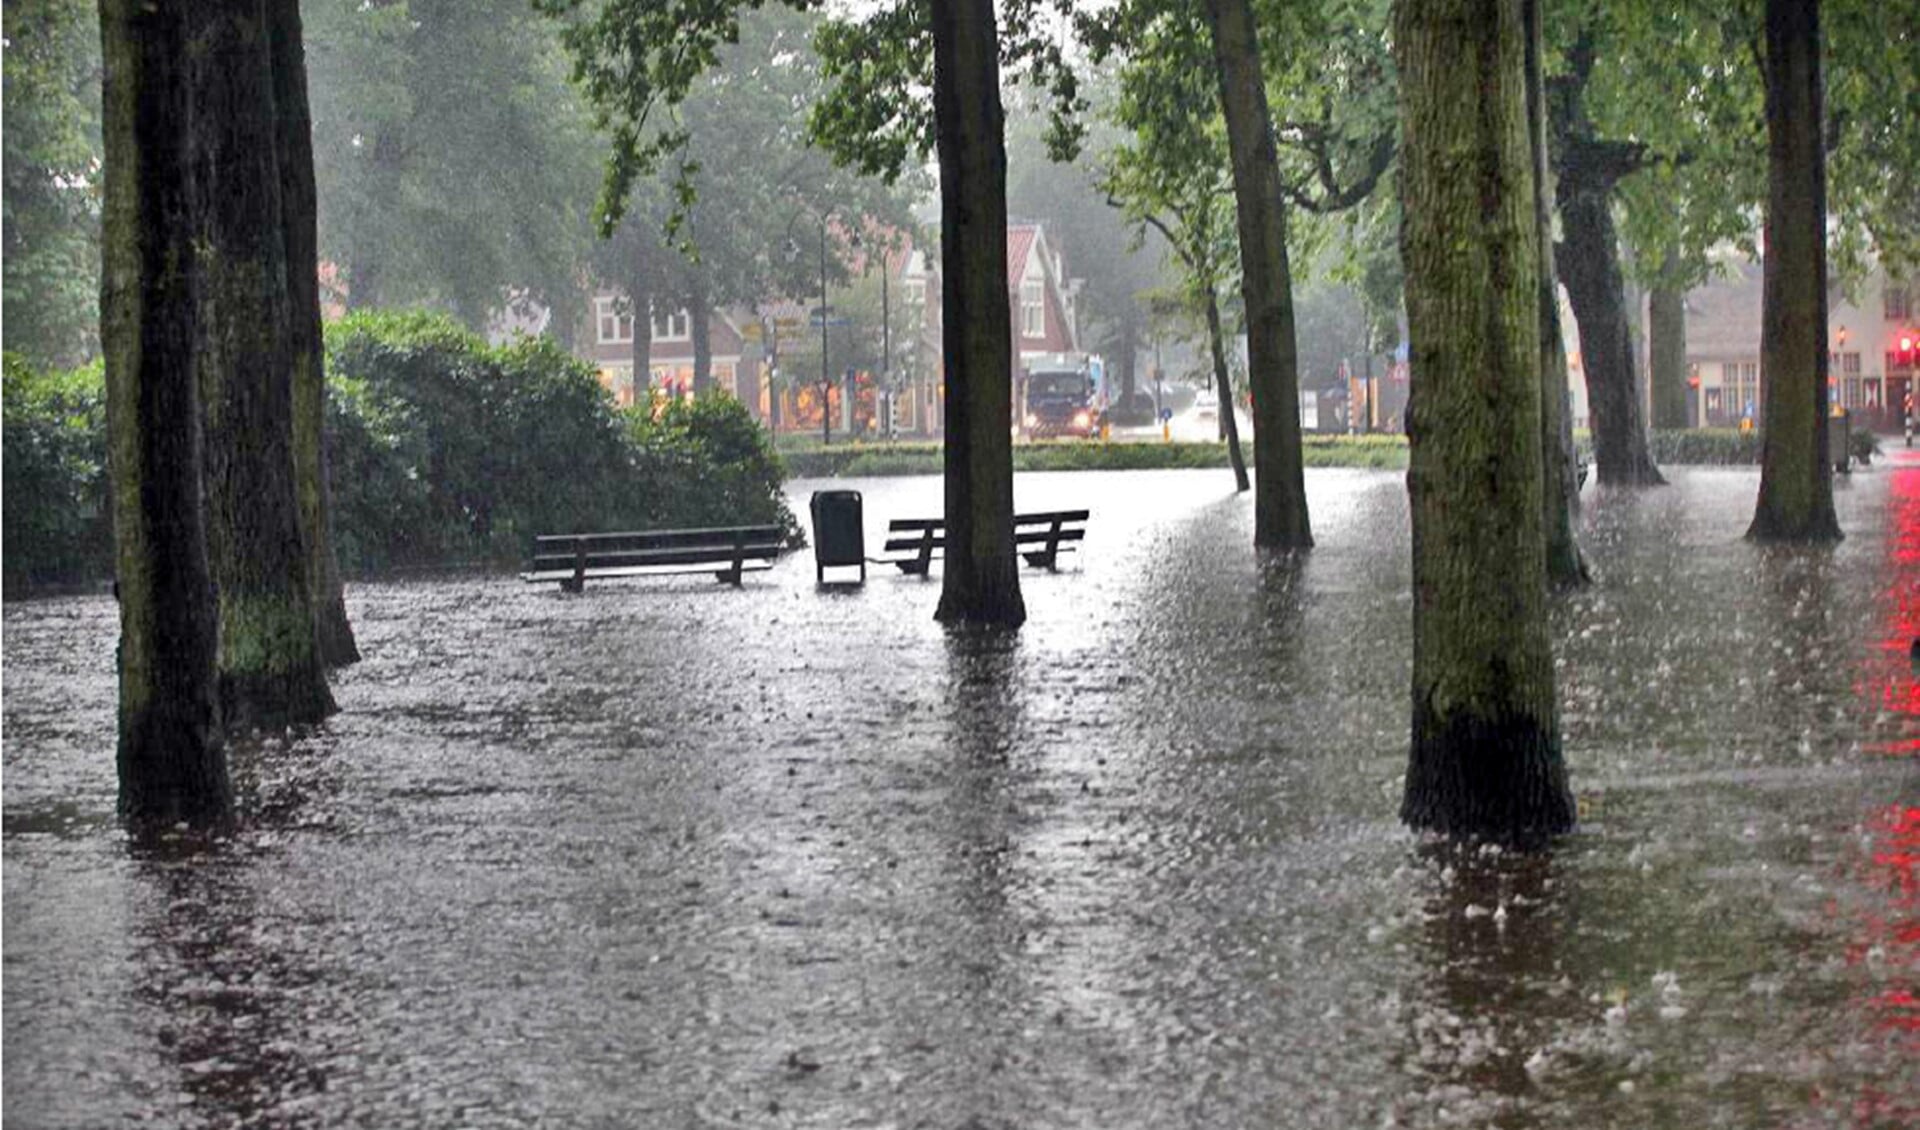 Met het afkoppelen van hemelwaterafvoer wil de gemeente wateroverlast zoals op De Brink op 28 juli 2014 voorkomen in de toekomst.